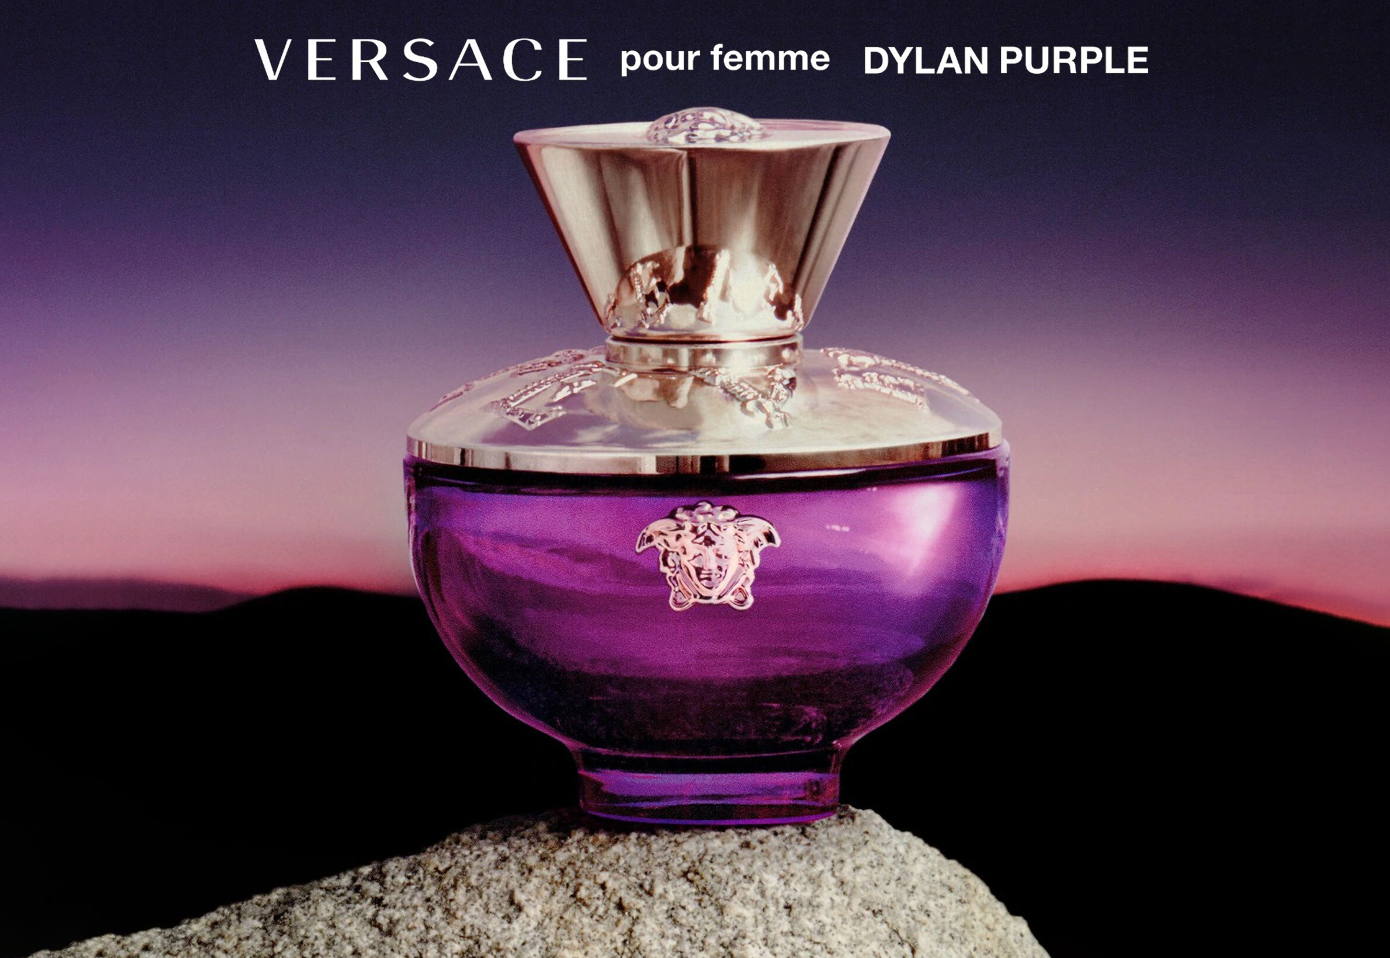 Versace Pour Femme Dylan Purpleورساچ پغ فم دیلن پرپل